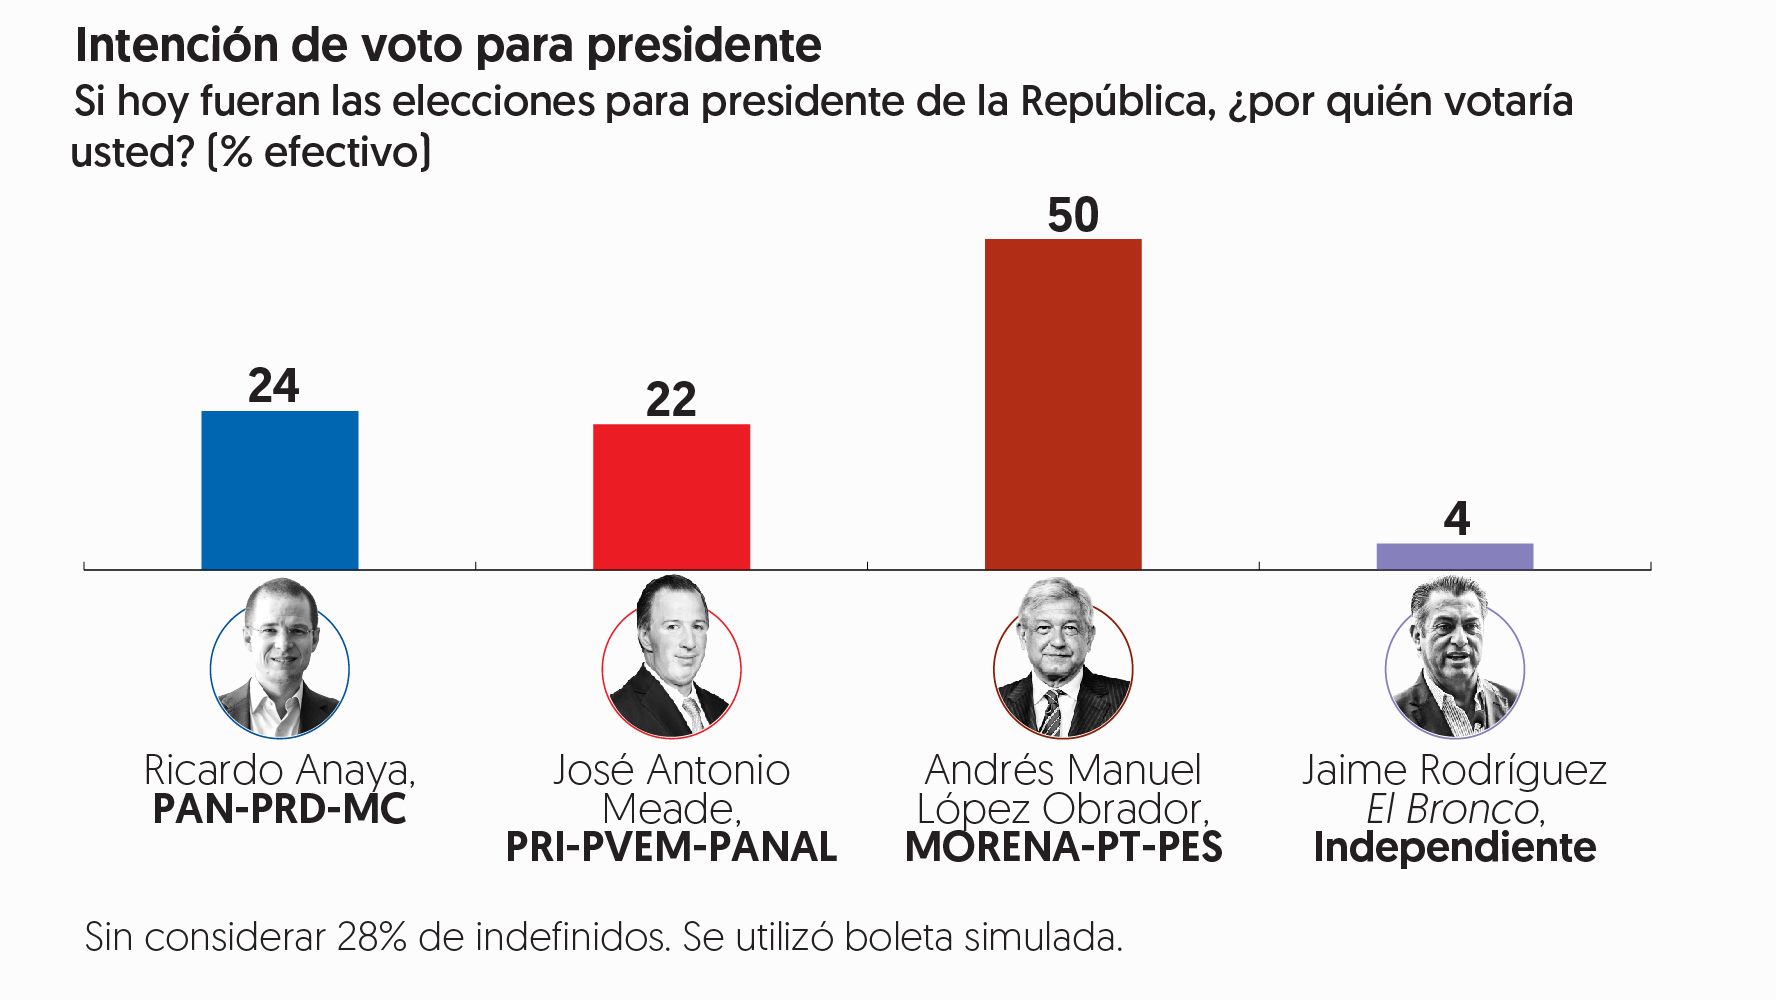 Encuesta de preferencias electorales de <em></noscript>El Financiero</em>. Publicación: 4 de junio de 2018.» width=»1776″ height=»1000″ class=»aligncenter size-full wp-image-2765″></a></p>
<p>«La ventaja de Andrés Manuel López Obrador se amplió entre mayo y junio de 20 a 26 puntos, al subir en la intención de voto de 46% a 50%, mientras que Ricardo Anaya pasó de 26 a 24% José Antonio Meade suma 22%», destaca Alejandro Moreno en la <a href=